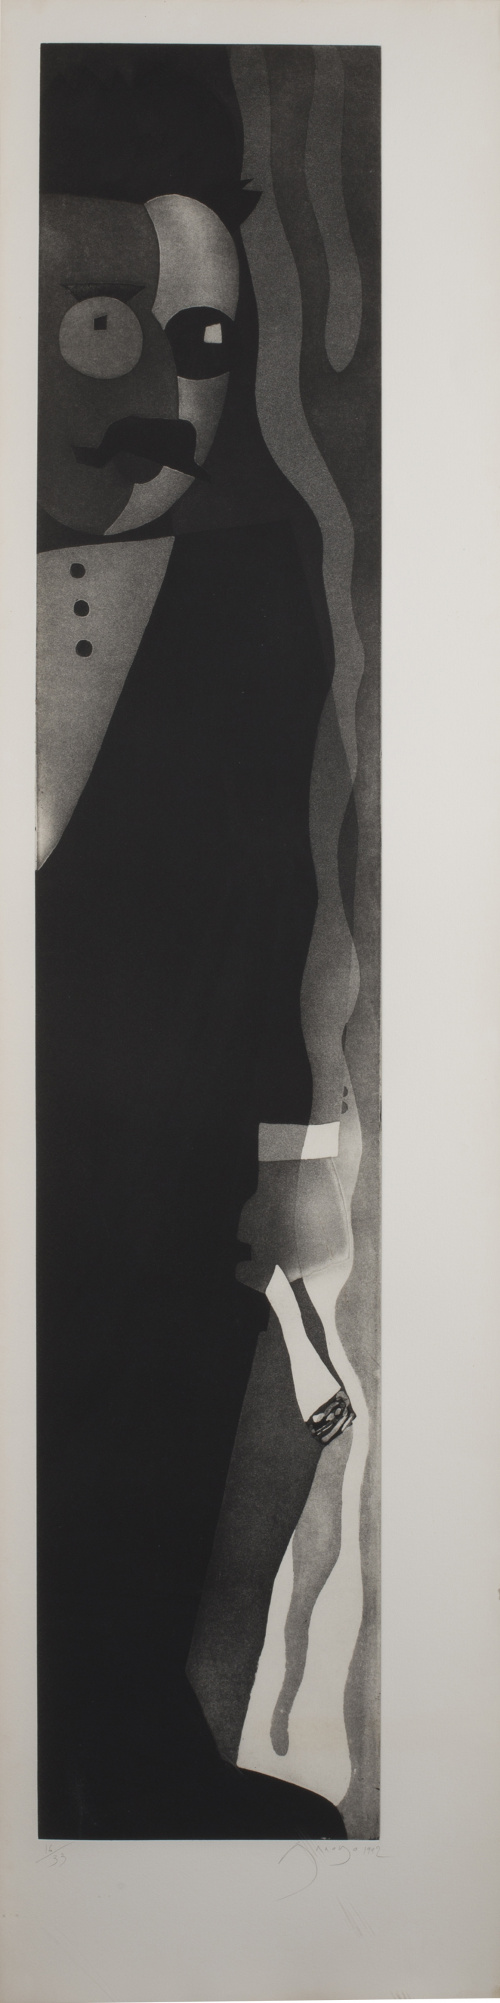 EDUARDO ARROYO (Madrid, 1937) Retrato de Walter Benjamin o